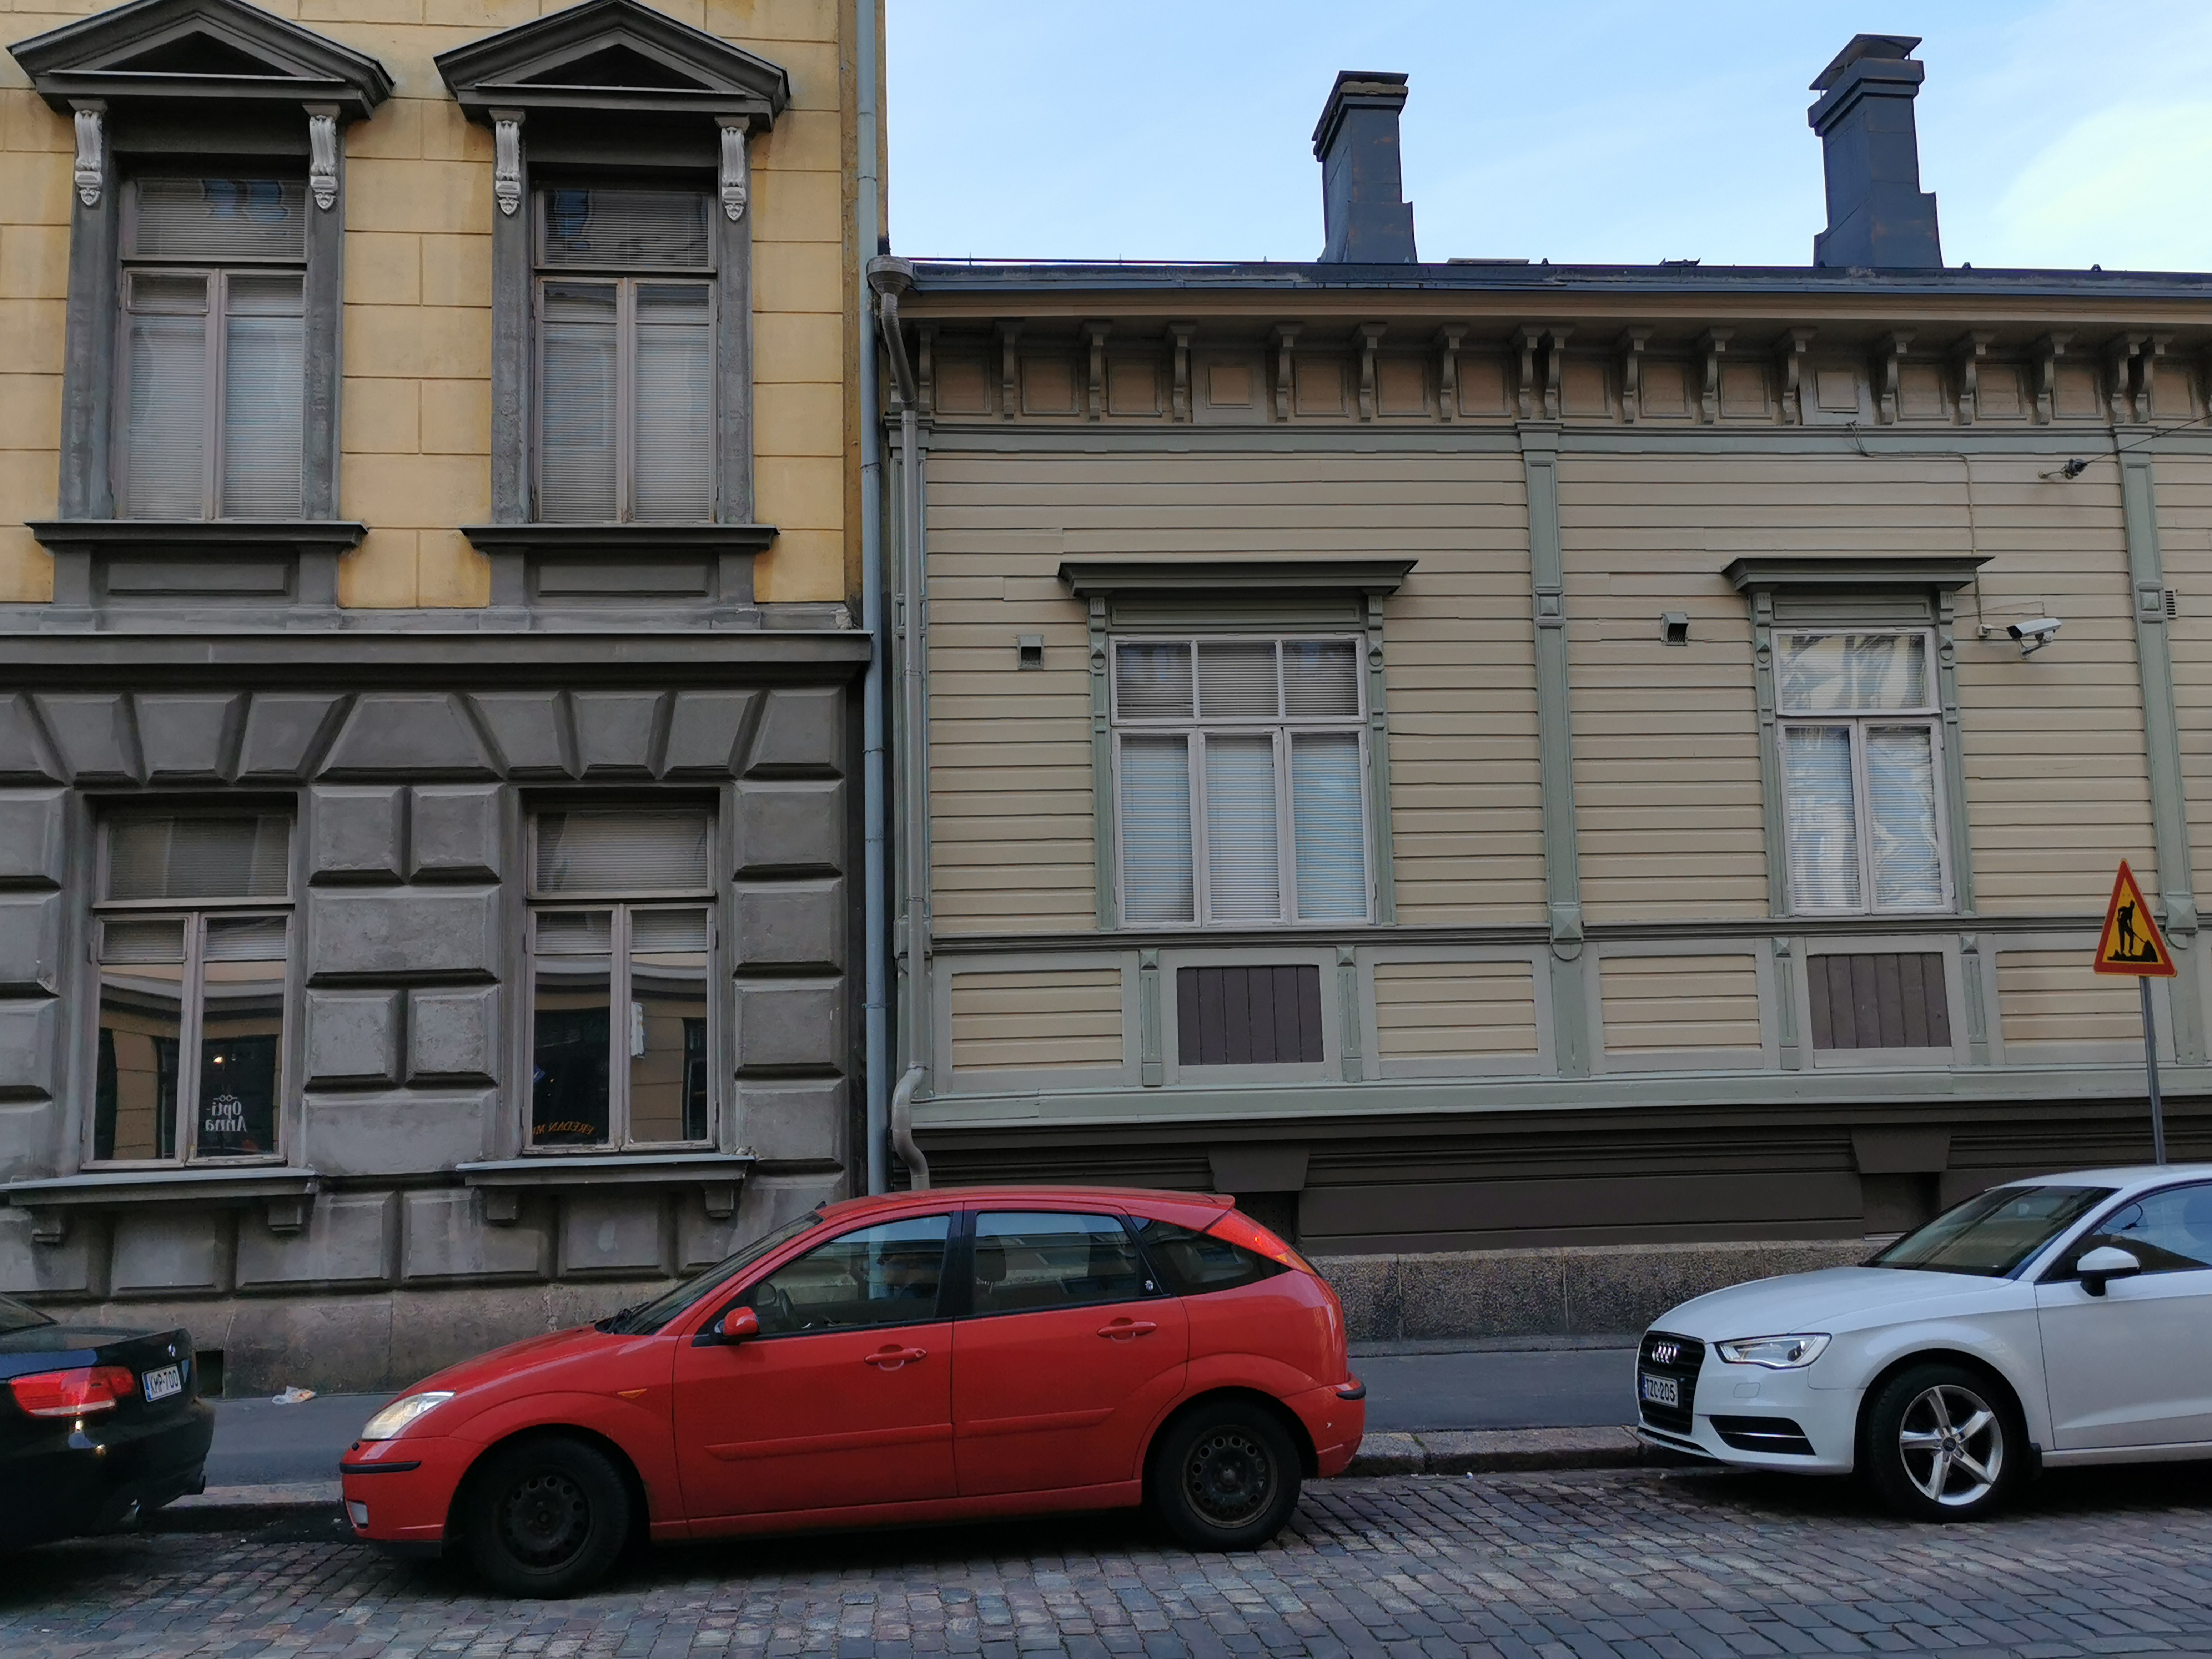 Kulmatalo osoitteessa Merimiehenkatu 13 ja Fredrikinkatu 21, lähikuva Fredrikinkadun puolelta. rephoto